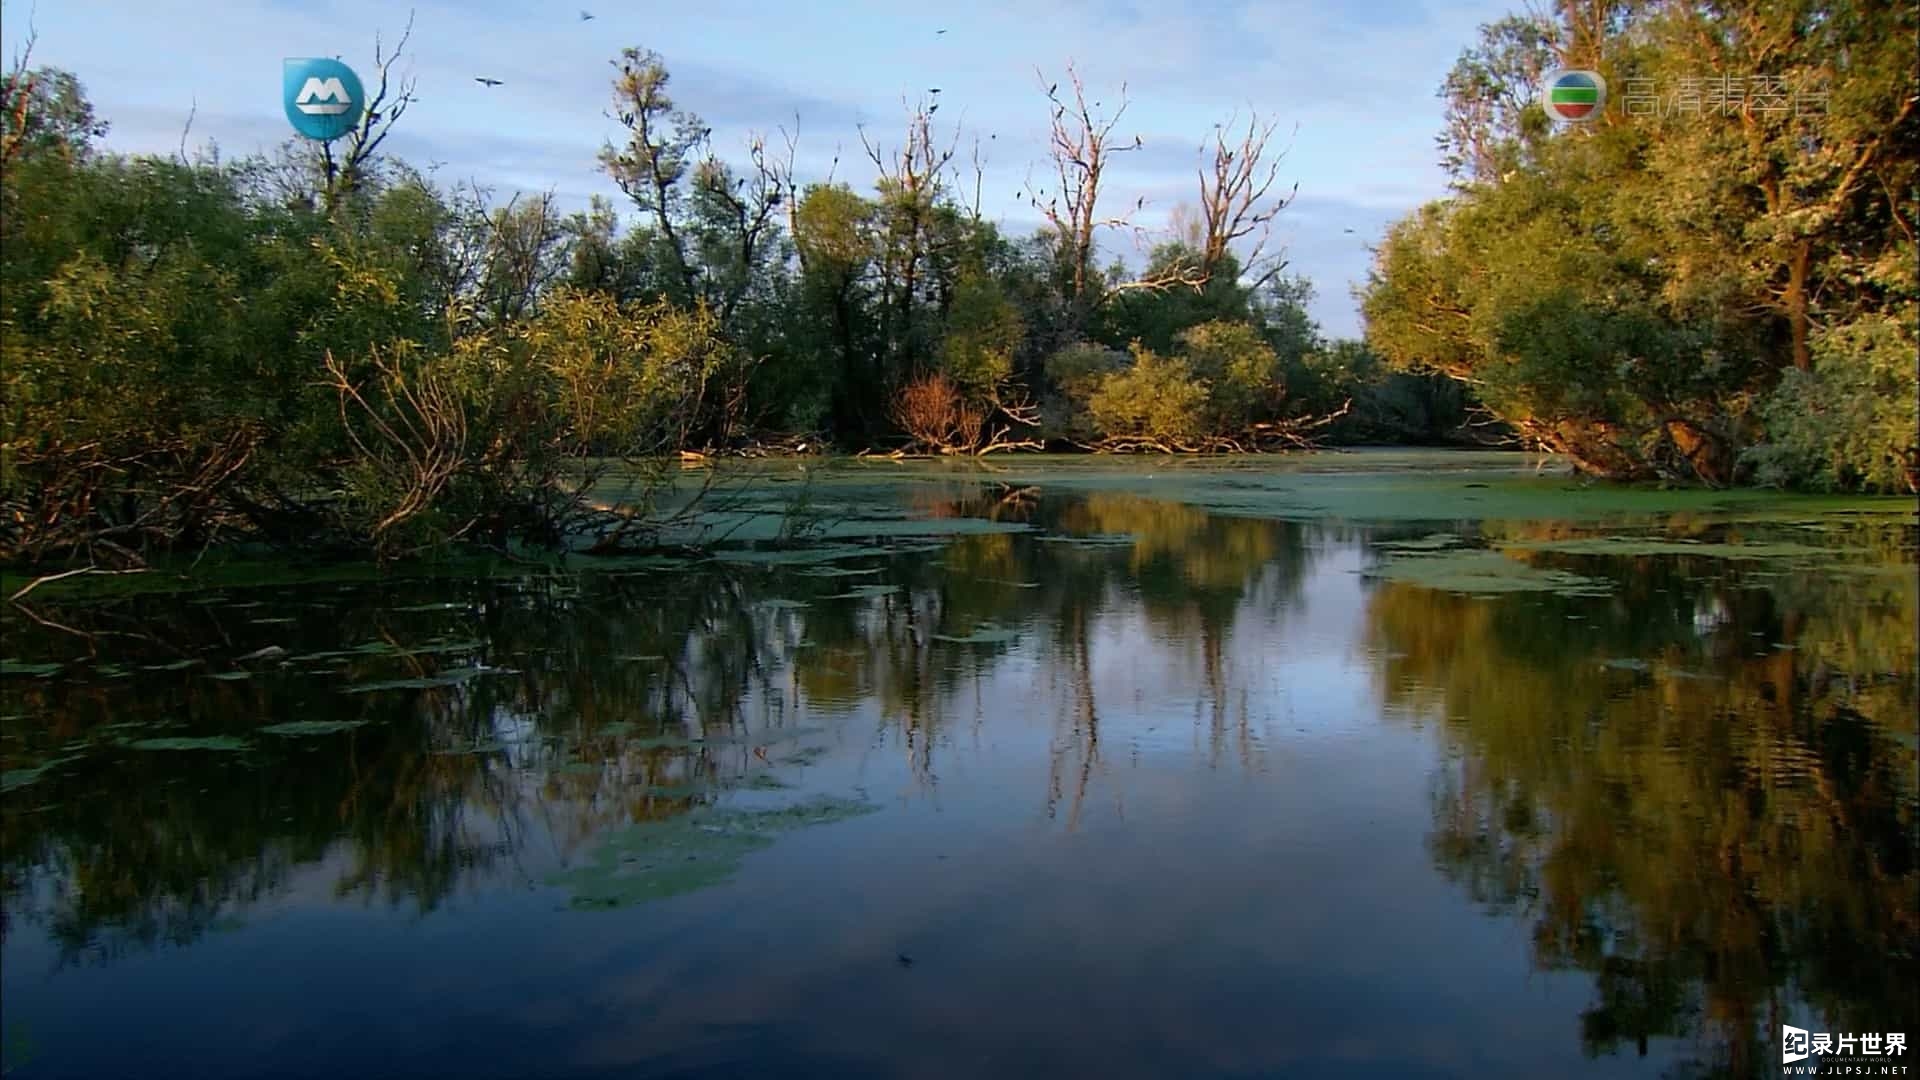 国家地理《多瑙河-欧洲的亚马孙/野性多瑙河 Danube: Europe’s Amazon》全2集 